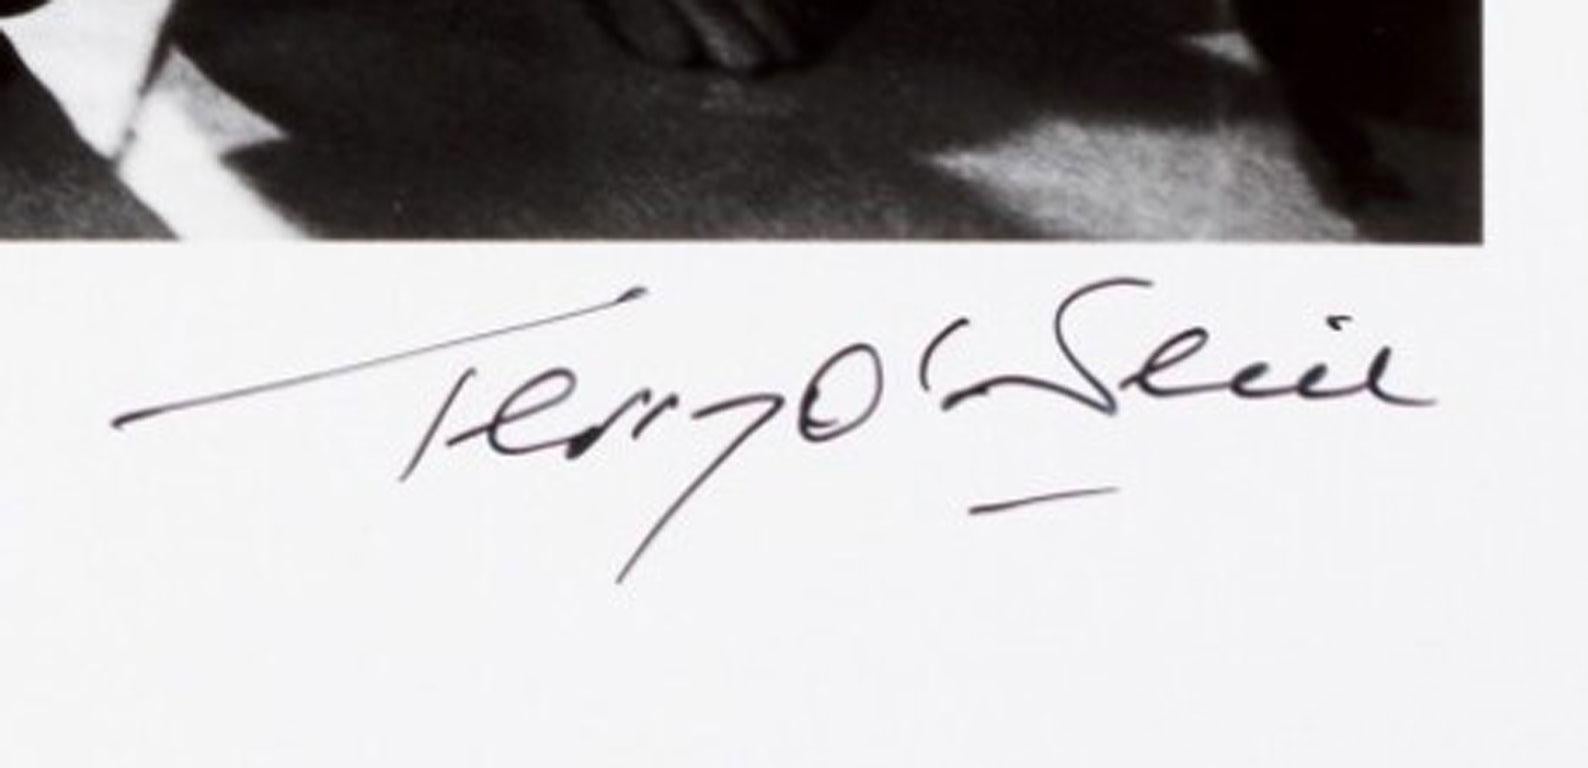 Terry O'Neill, Brigitte Bardot, Les Novices (signed) 1